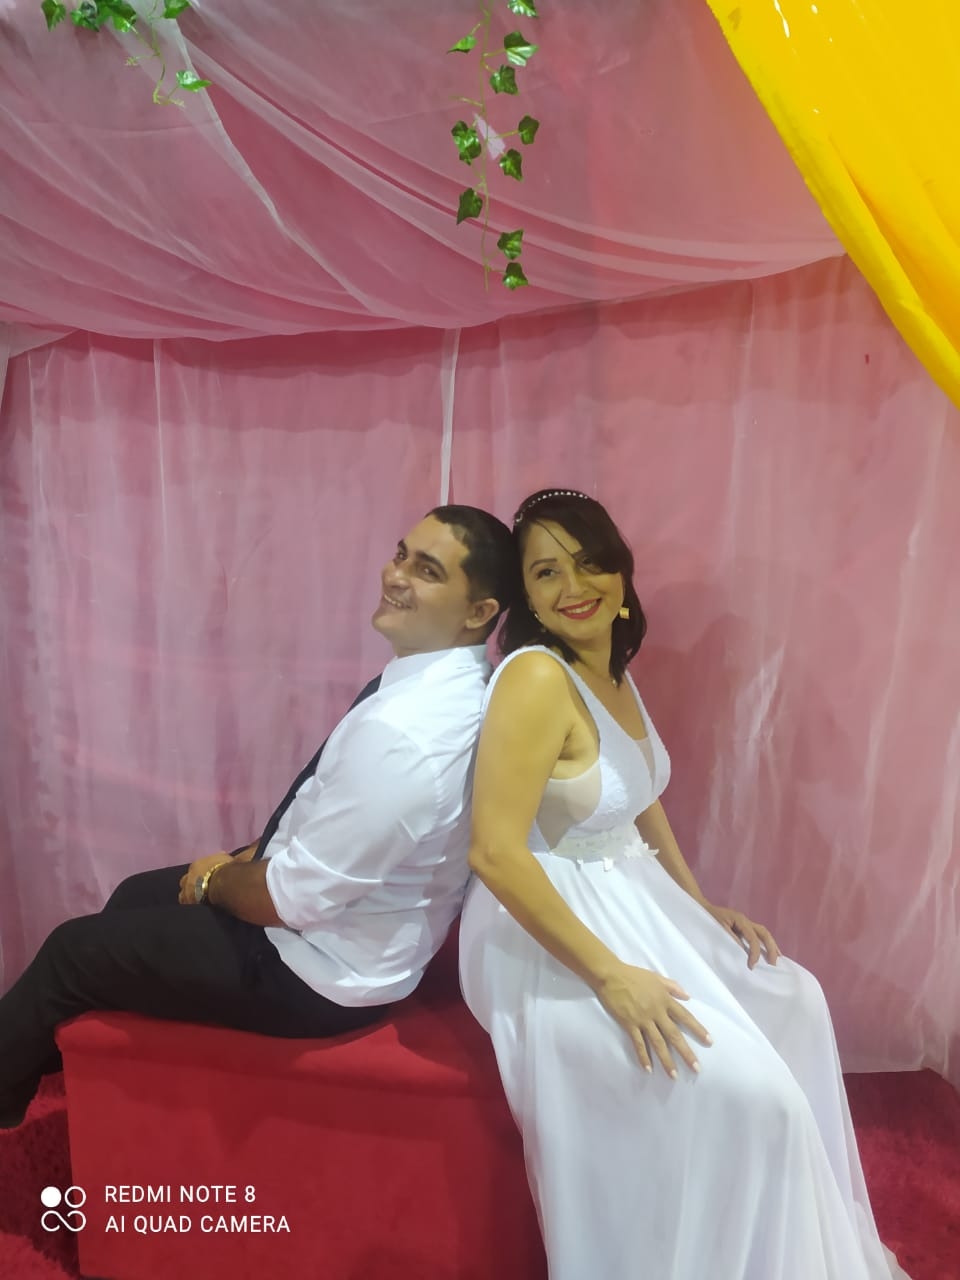 Prefeitura realiza Casamento Comunitário em Angico